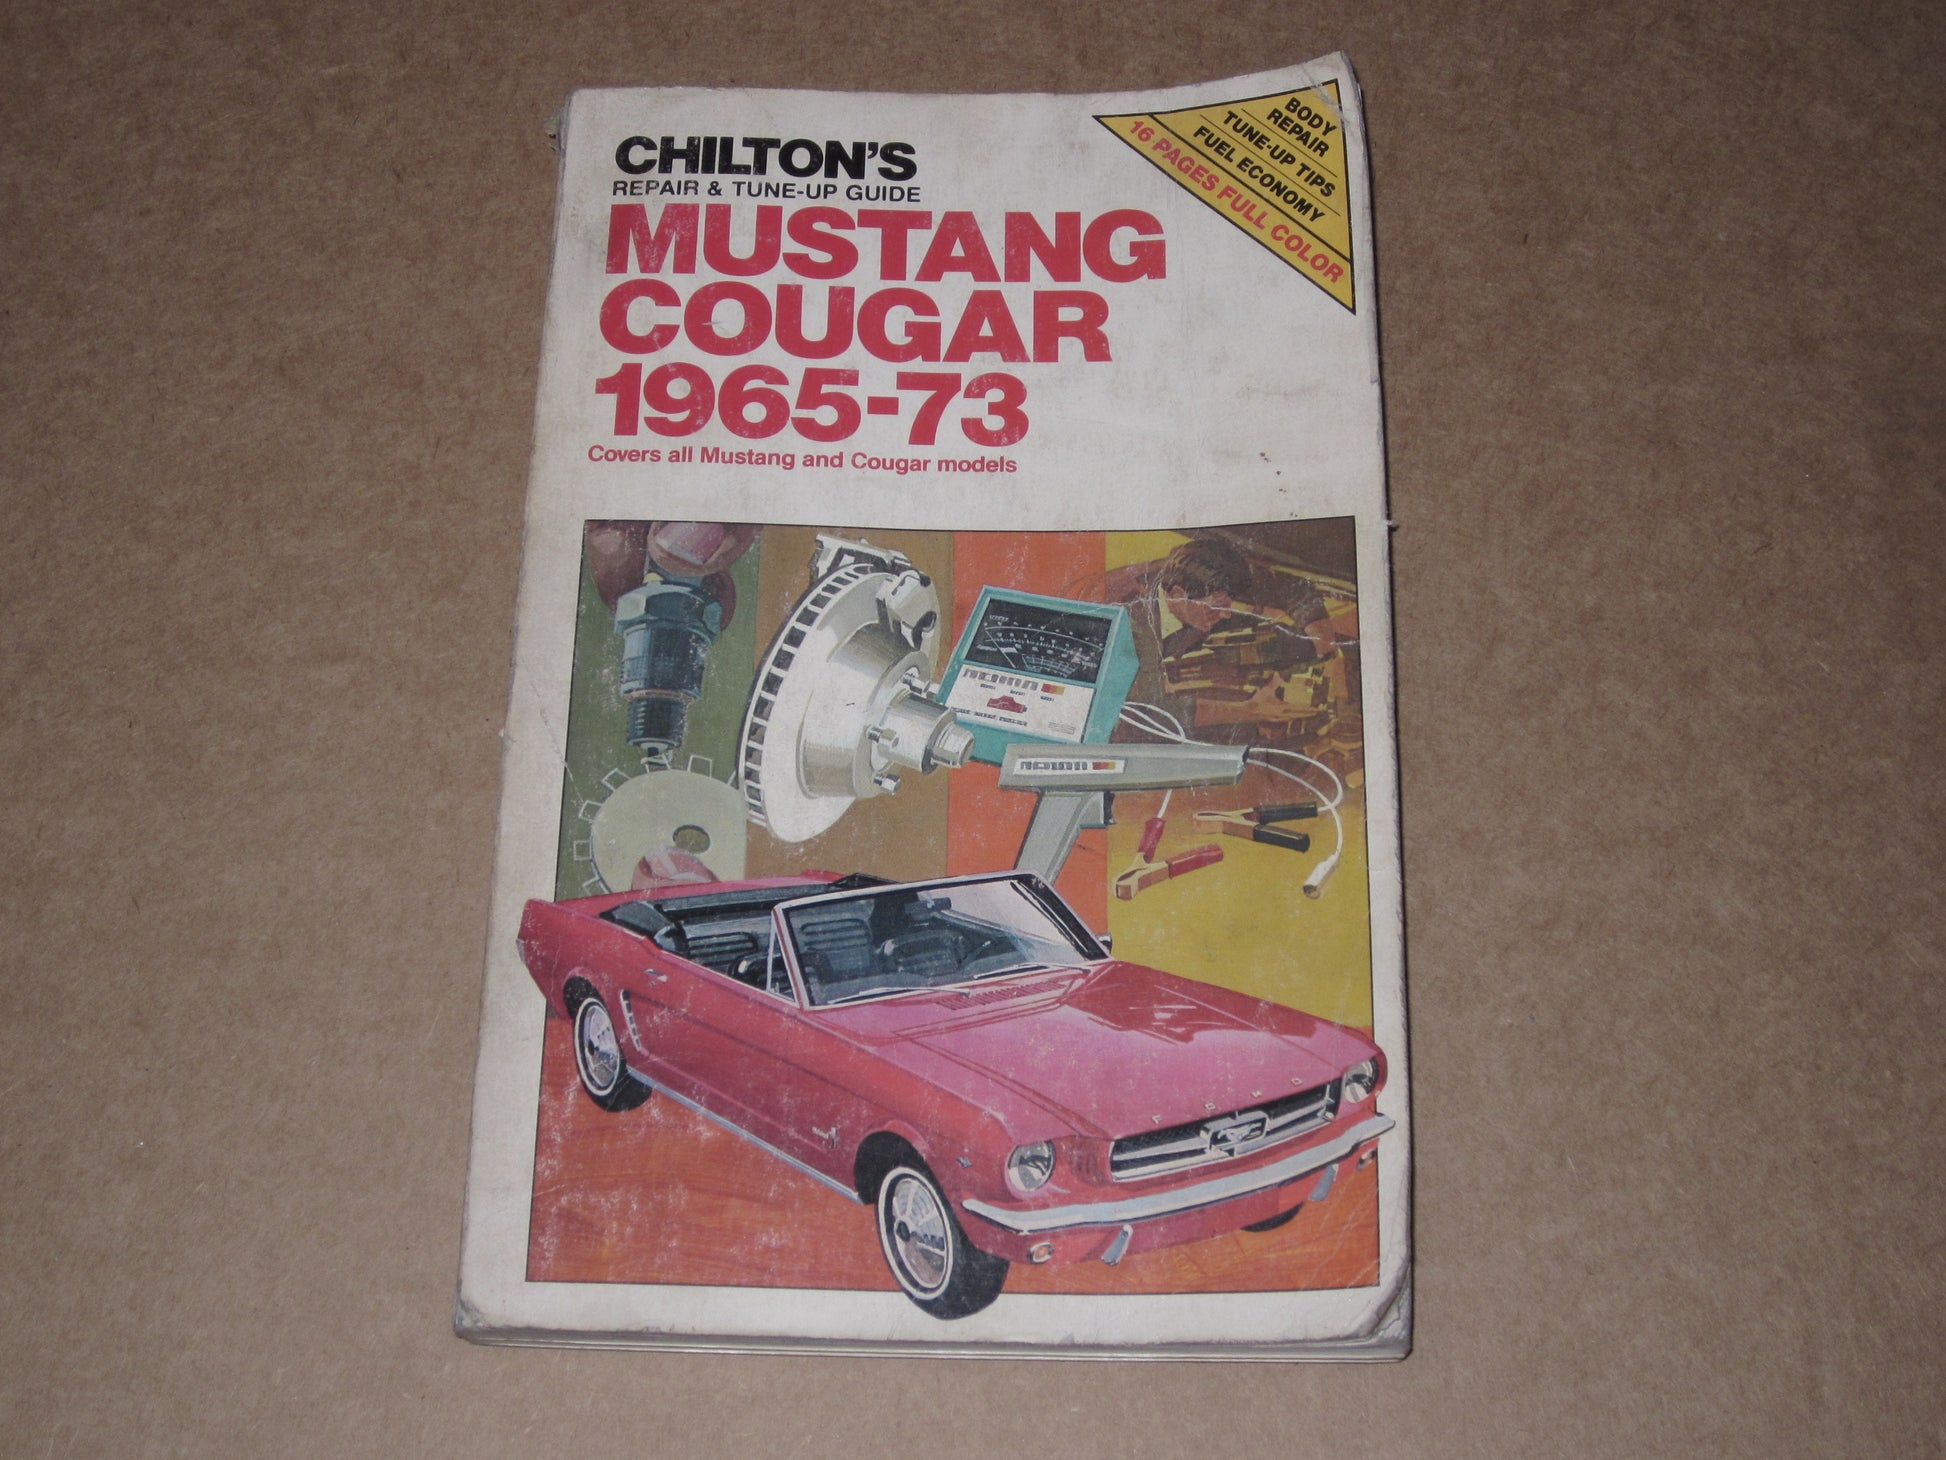 65-73 Mustang Cougar Repair & Tune-Up Guide Manual